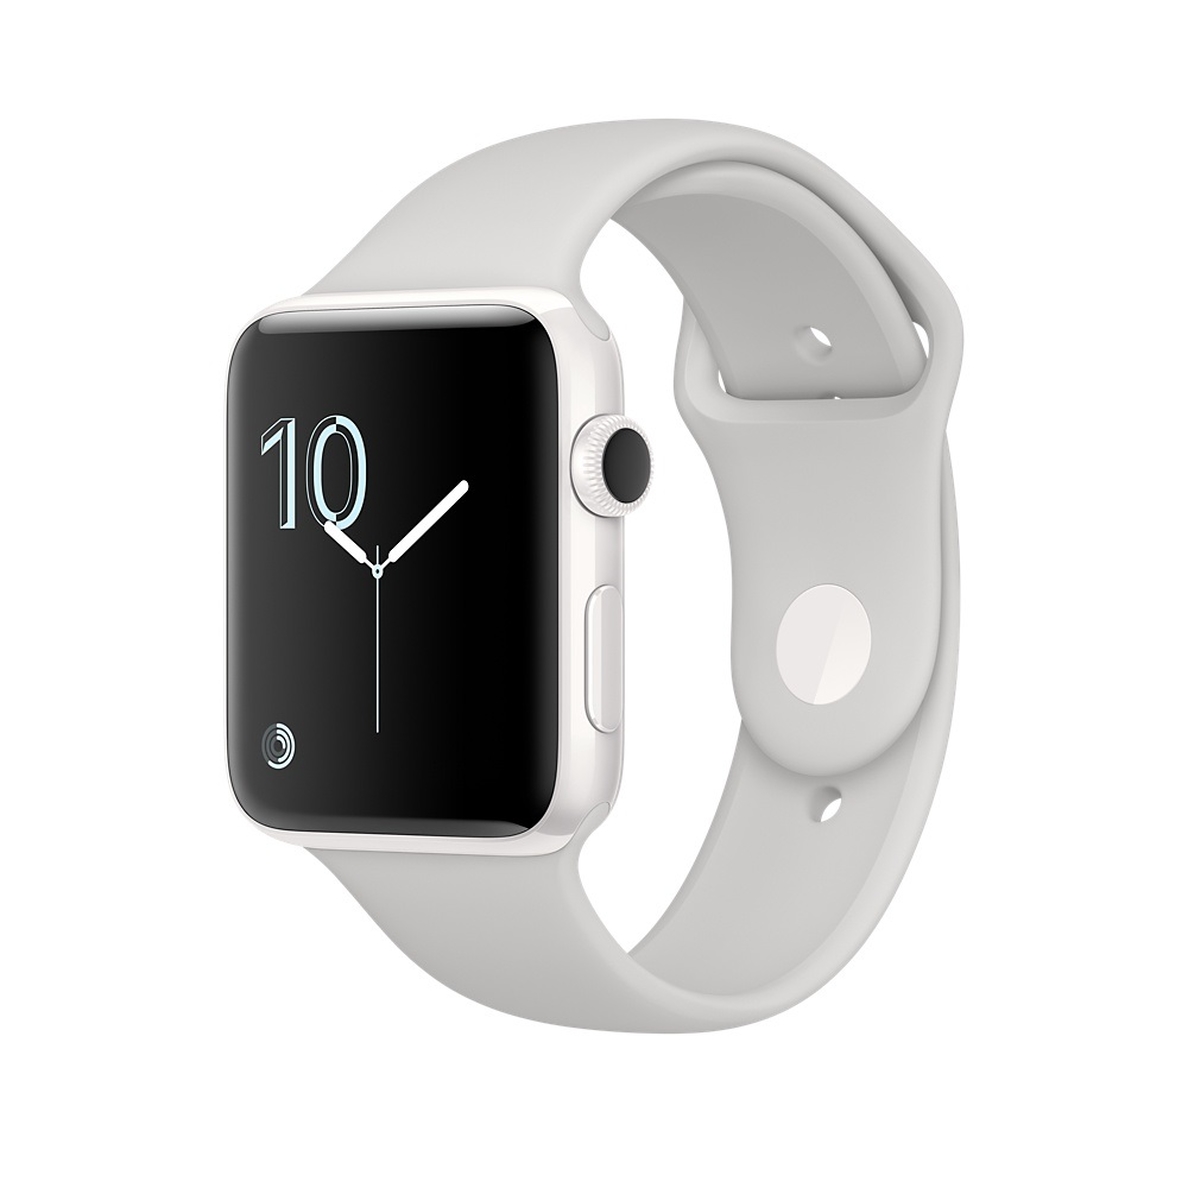 Apple reemplazará de manera gratuita las baterías dañadas de su reloj Watch Series 2 de 42 milímetros